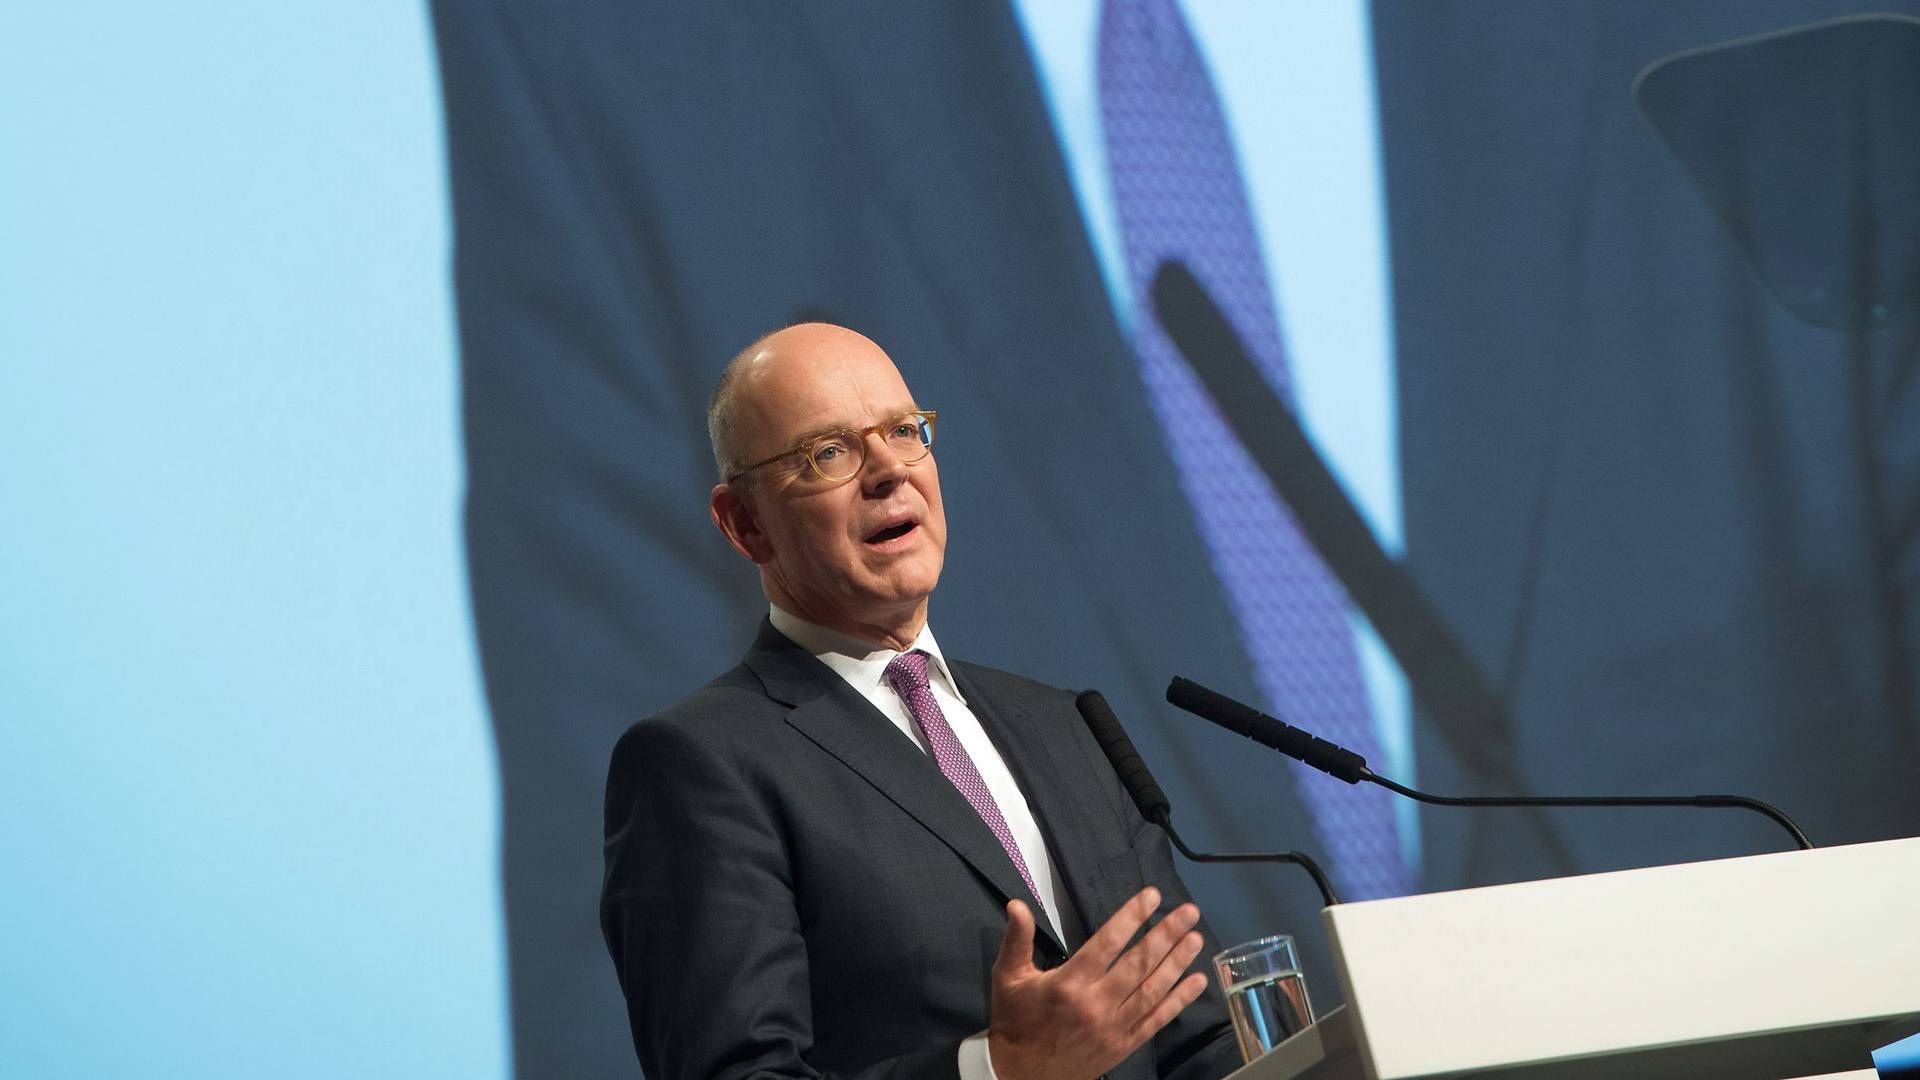 Martin Blessing ses her tale for Commerzbanks aktionærer i 2016, kort inden han forlod banken til fordel for et job i UBS. | Foto: Arne Dedert/AP/Ritzau Scanpix